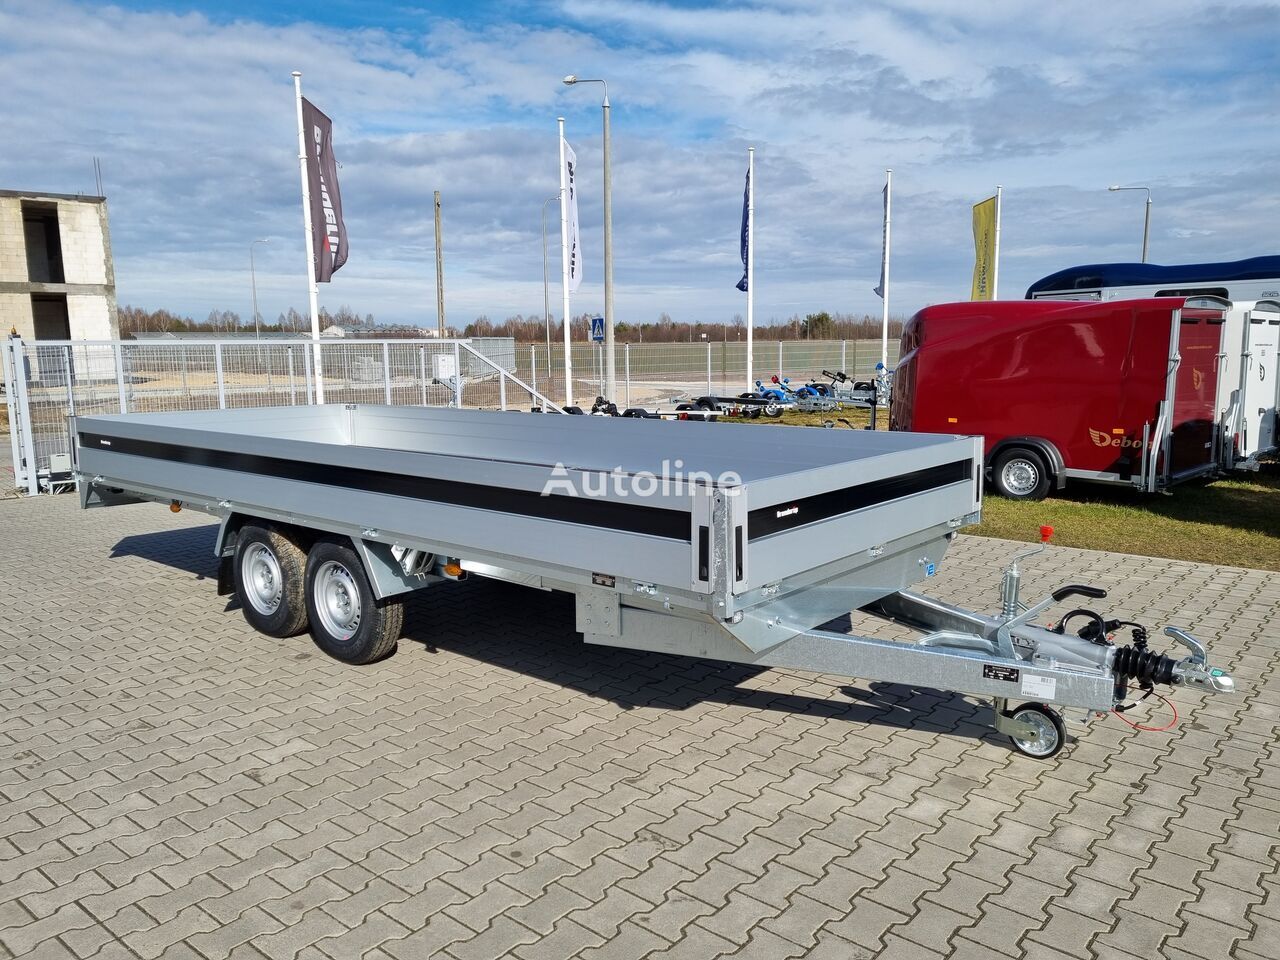 Nieuw Open/ Plateau aanhangwagen Brenderup 5520 WATB 3,5T GVW 517x204 cm 5m long trailer platform: afbeelding 2